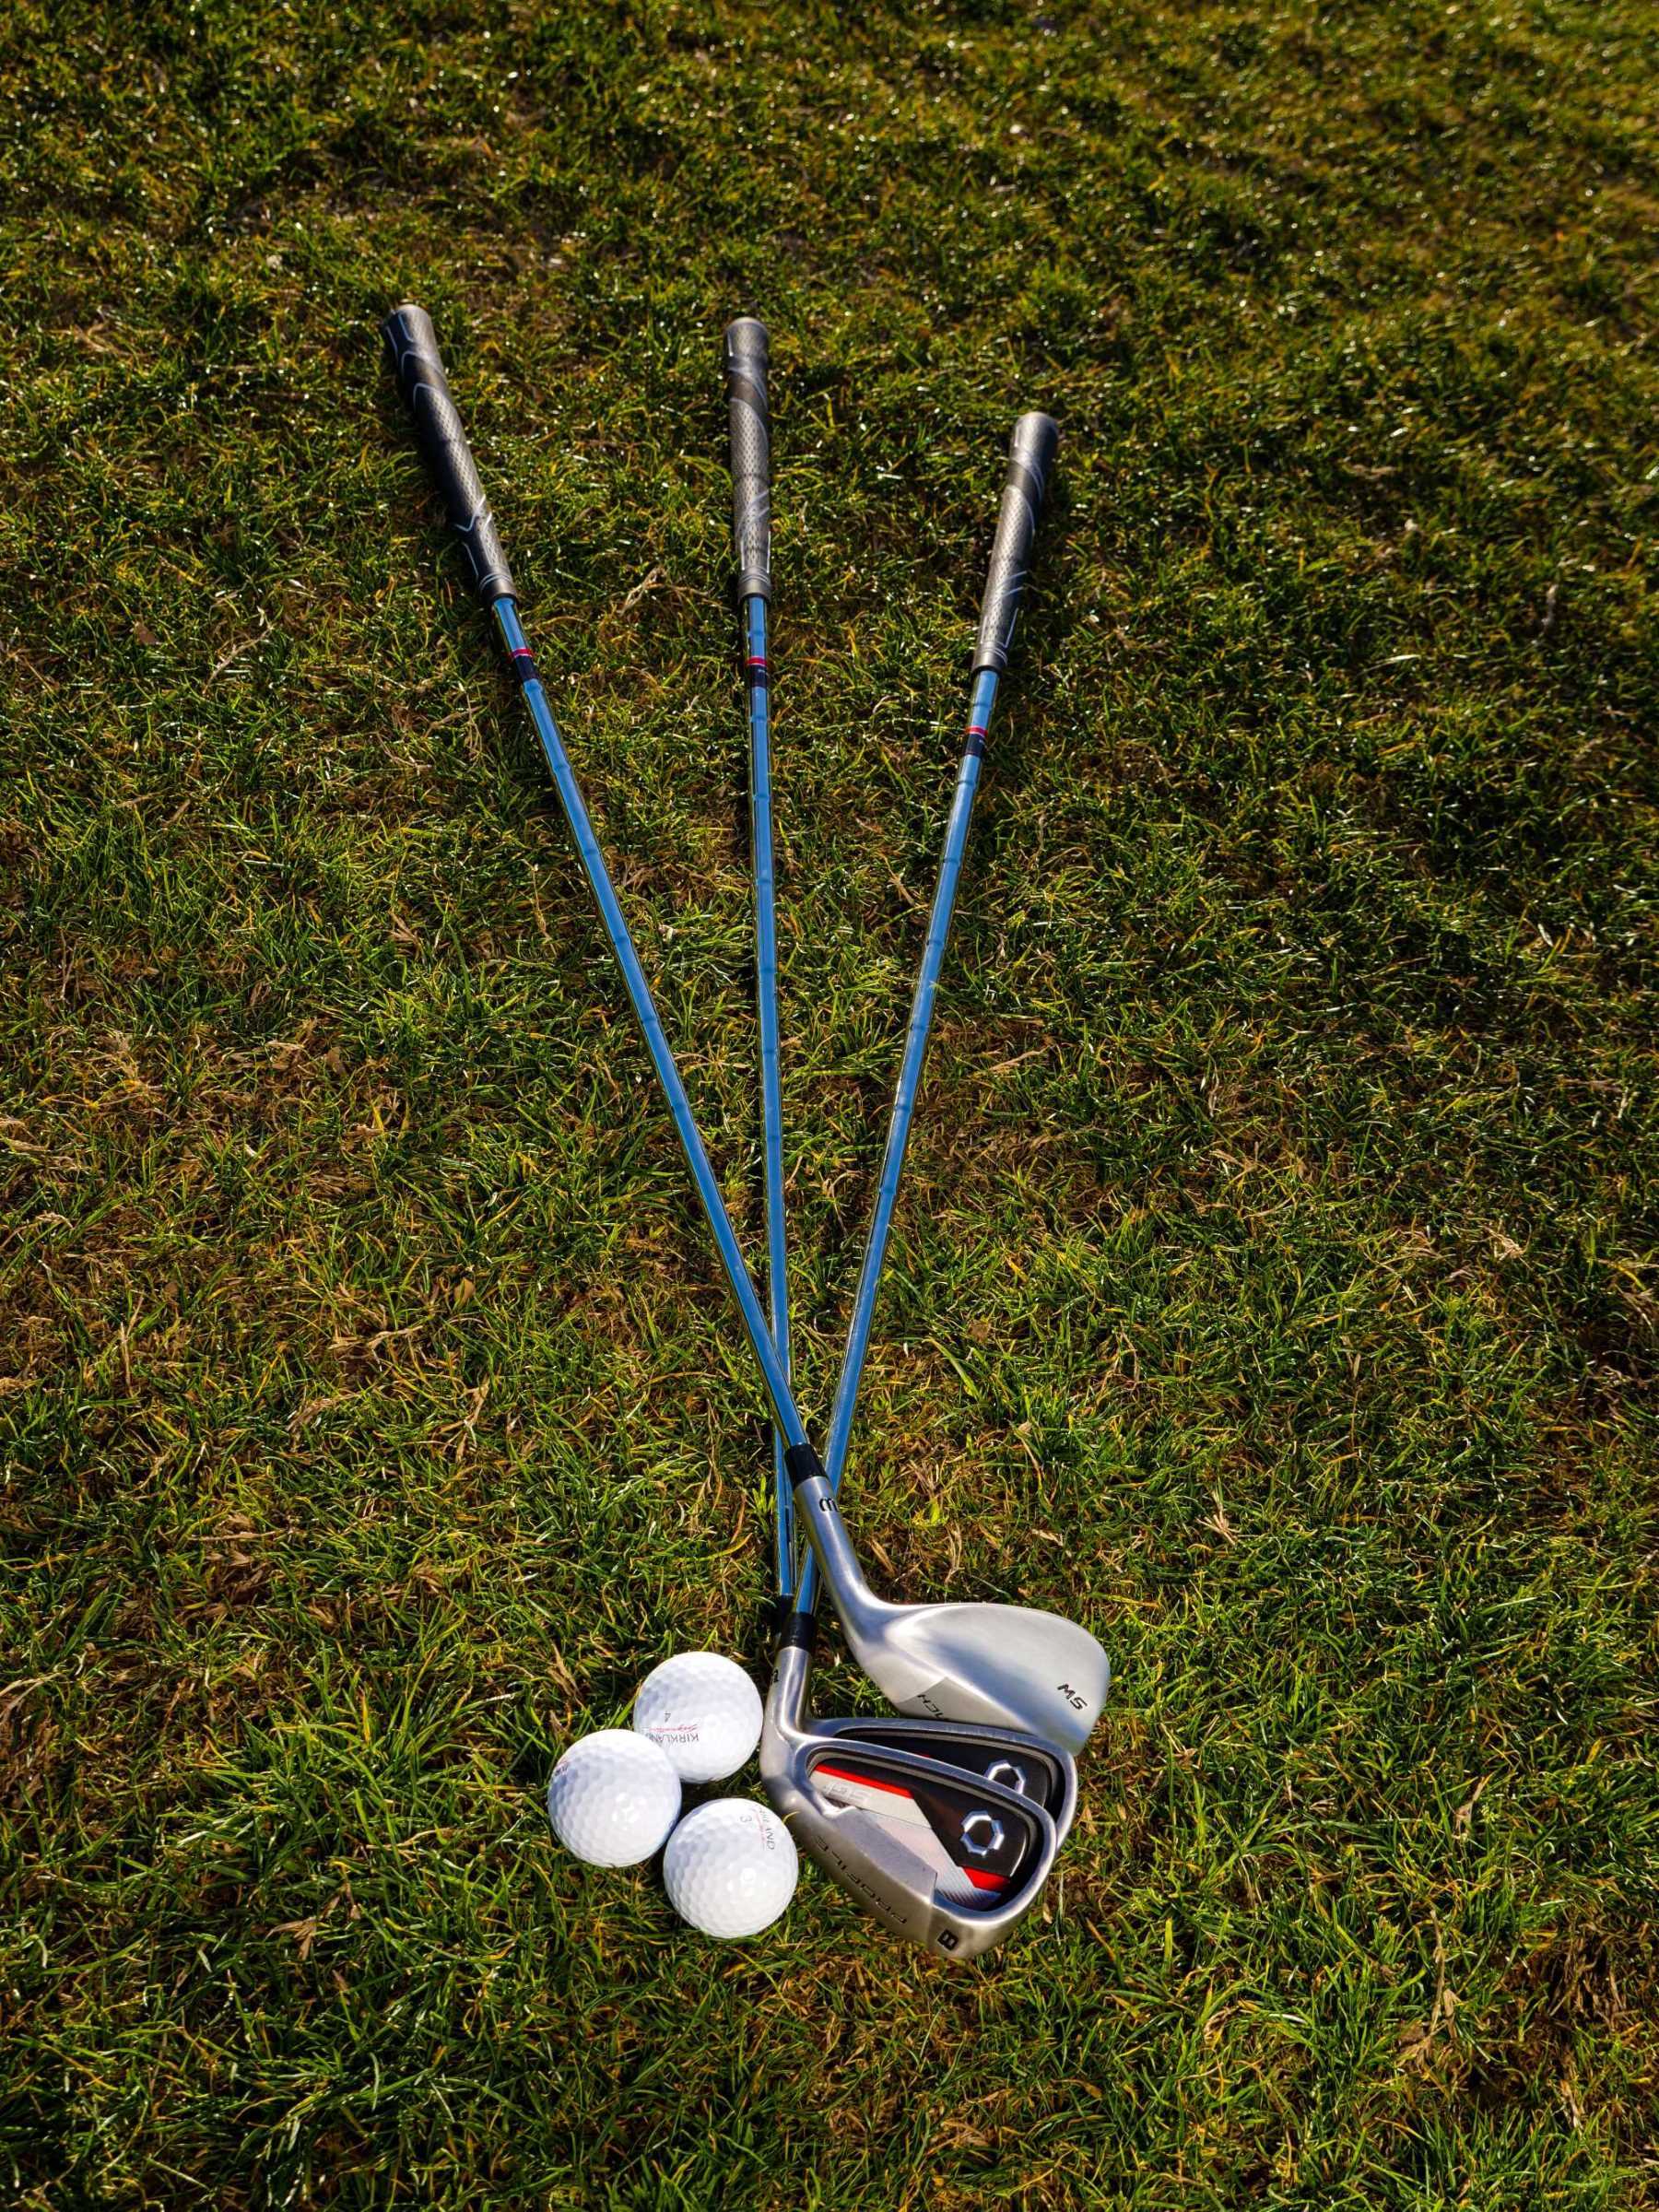 La imagen muestra unos palos de golf sobre el césped.